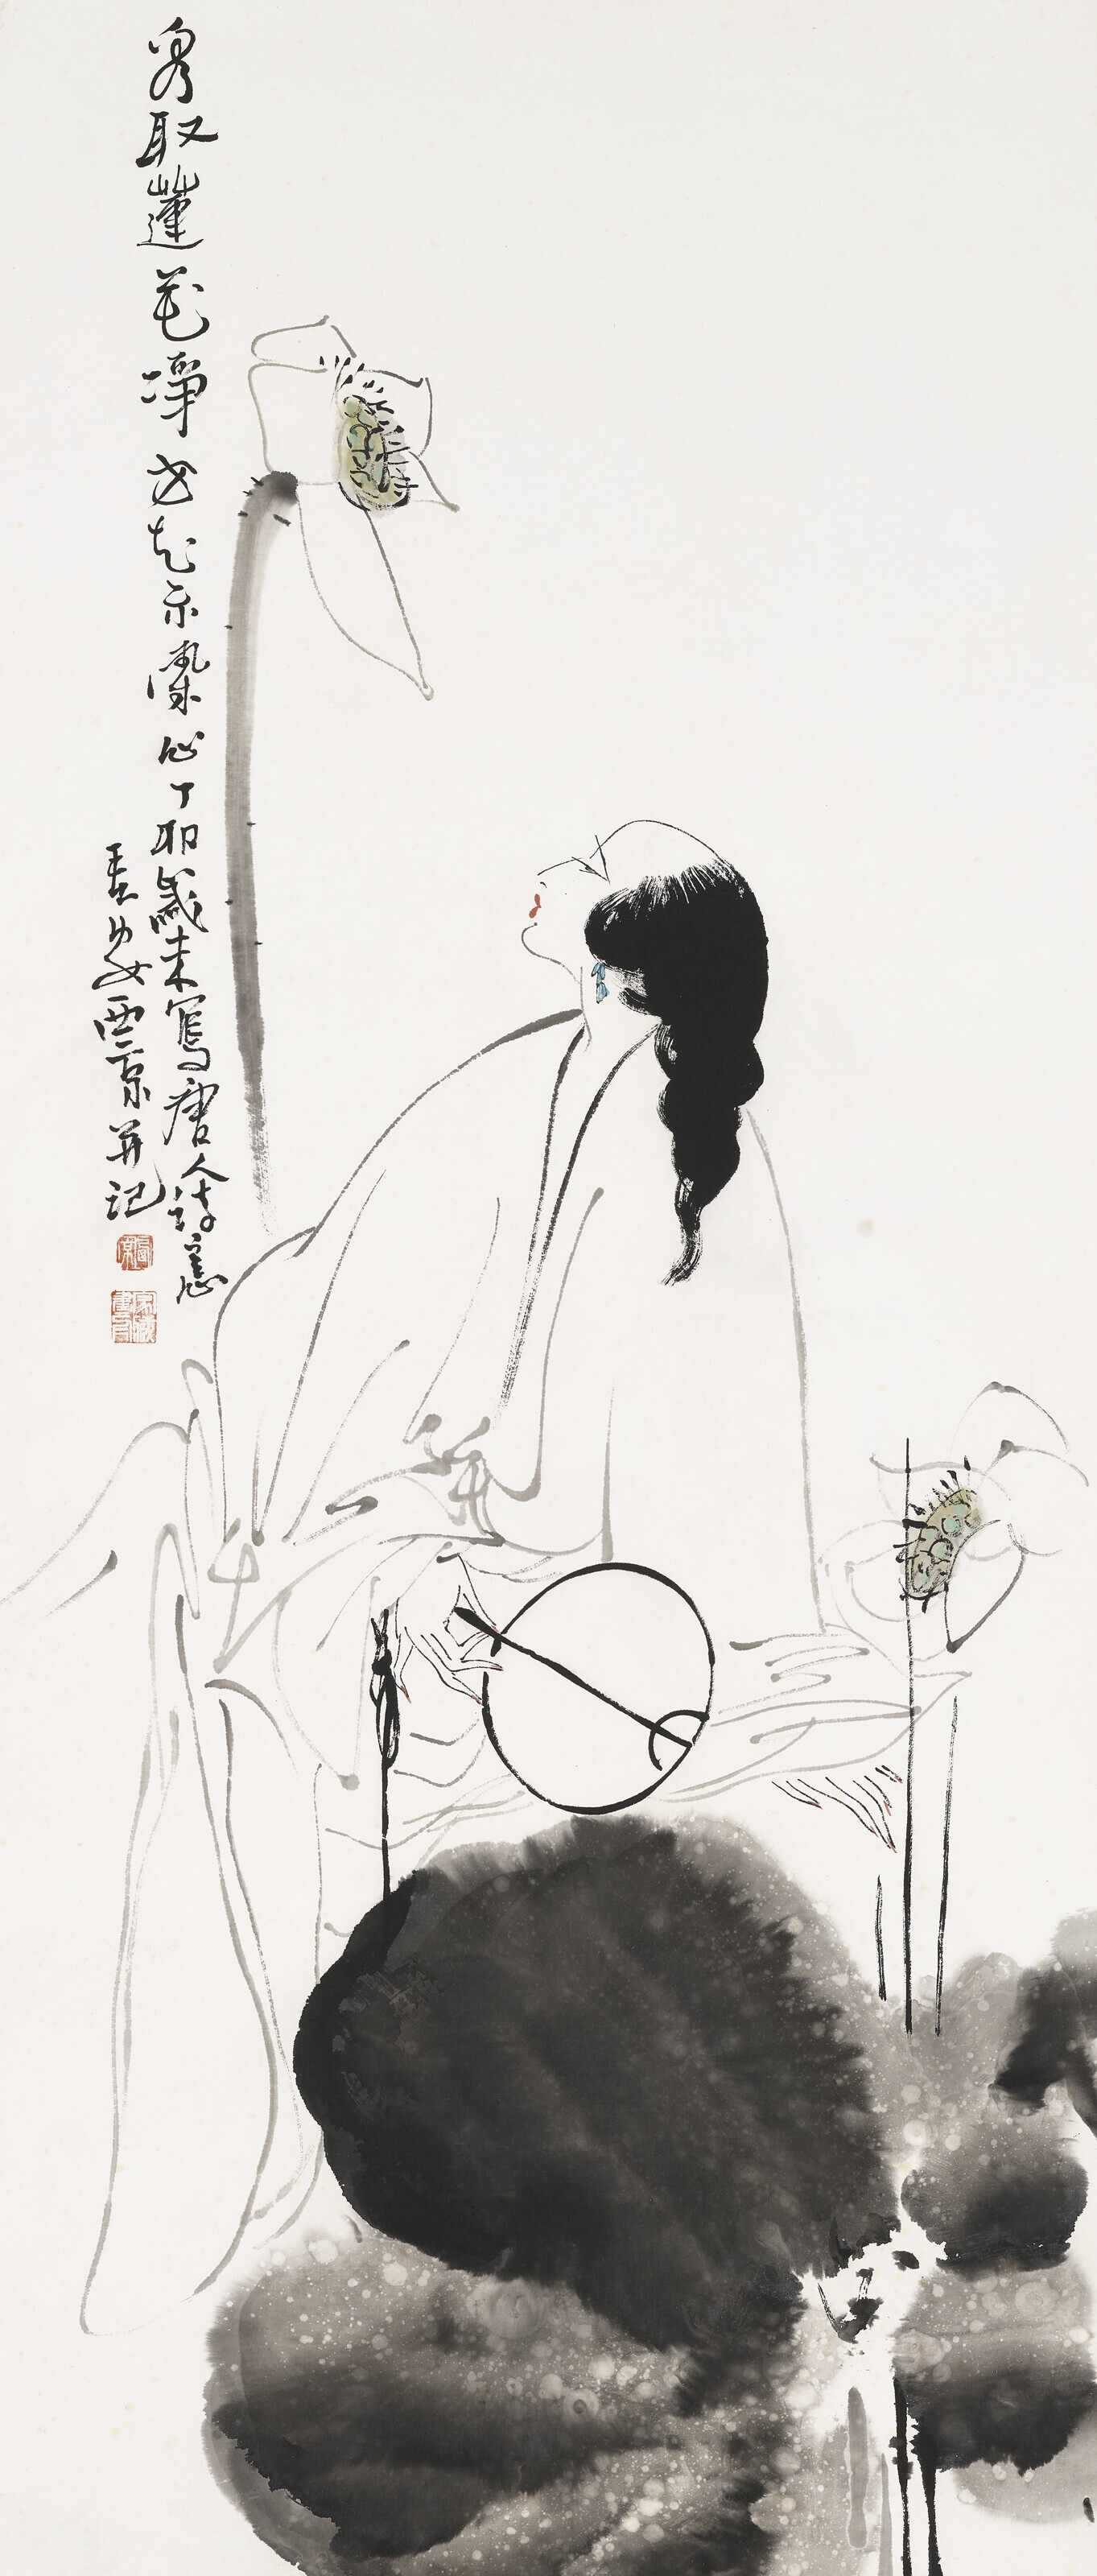 Lady and Lotus by Wang Xijing, 1987